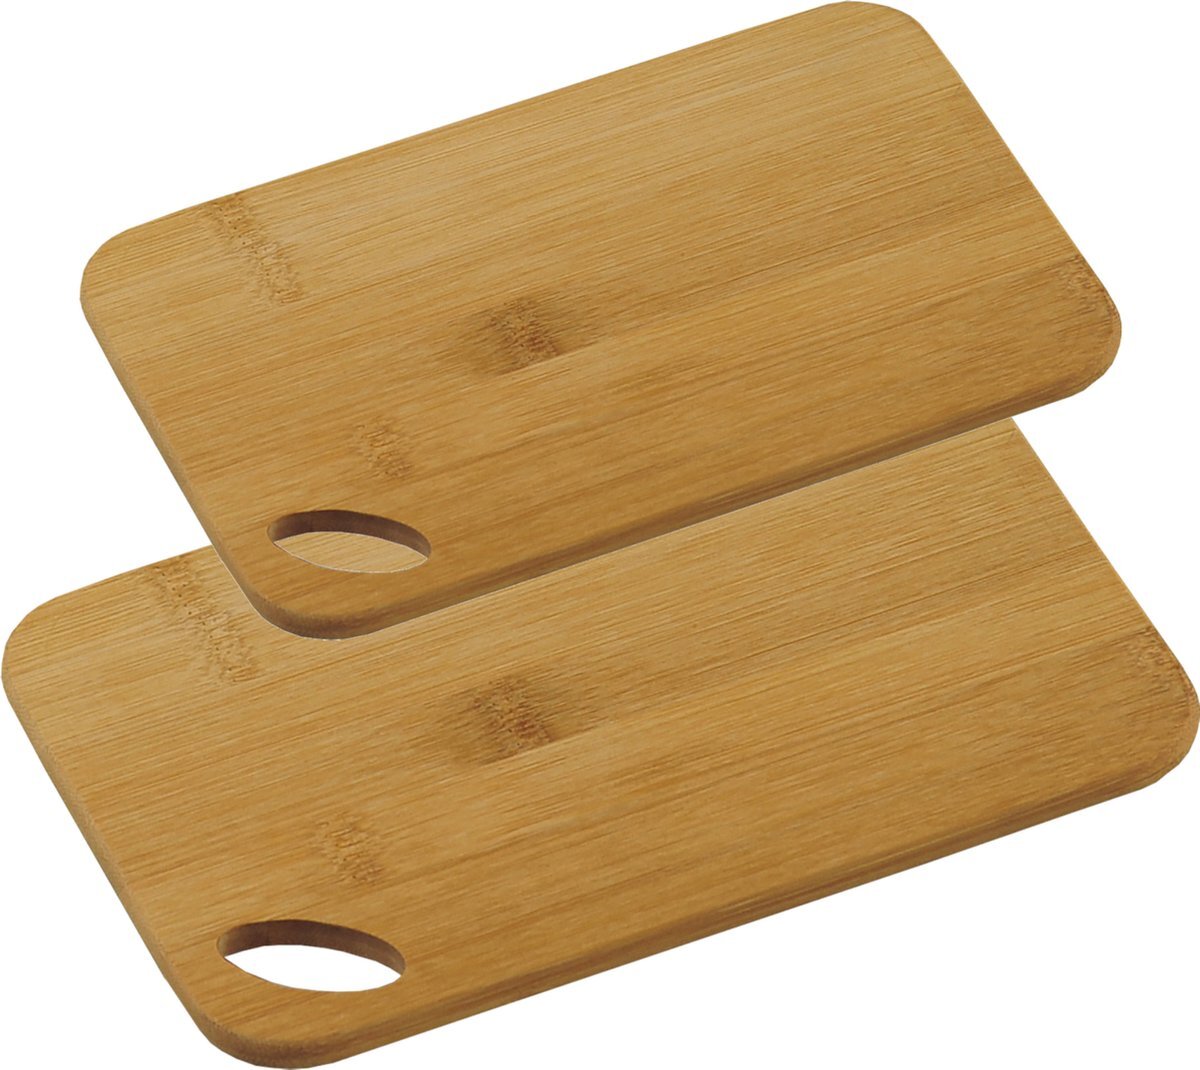 KESPER Bamboe houten snijplanken voordeel set in 2 verschillende formaten - 21 x 22 cm en 21 x 30 cm